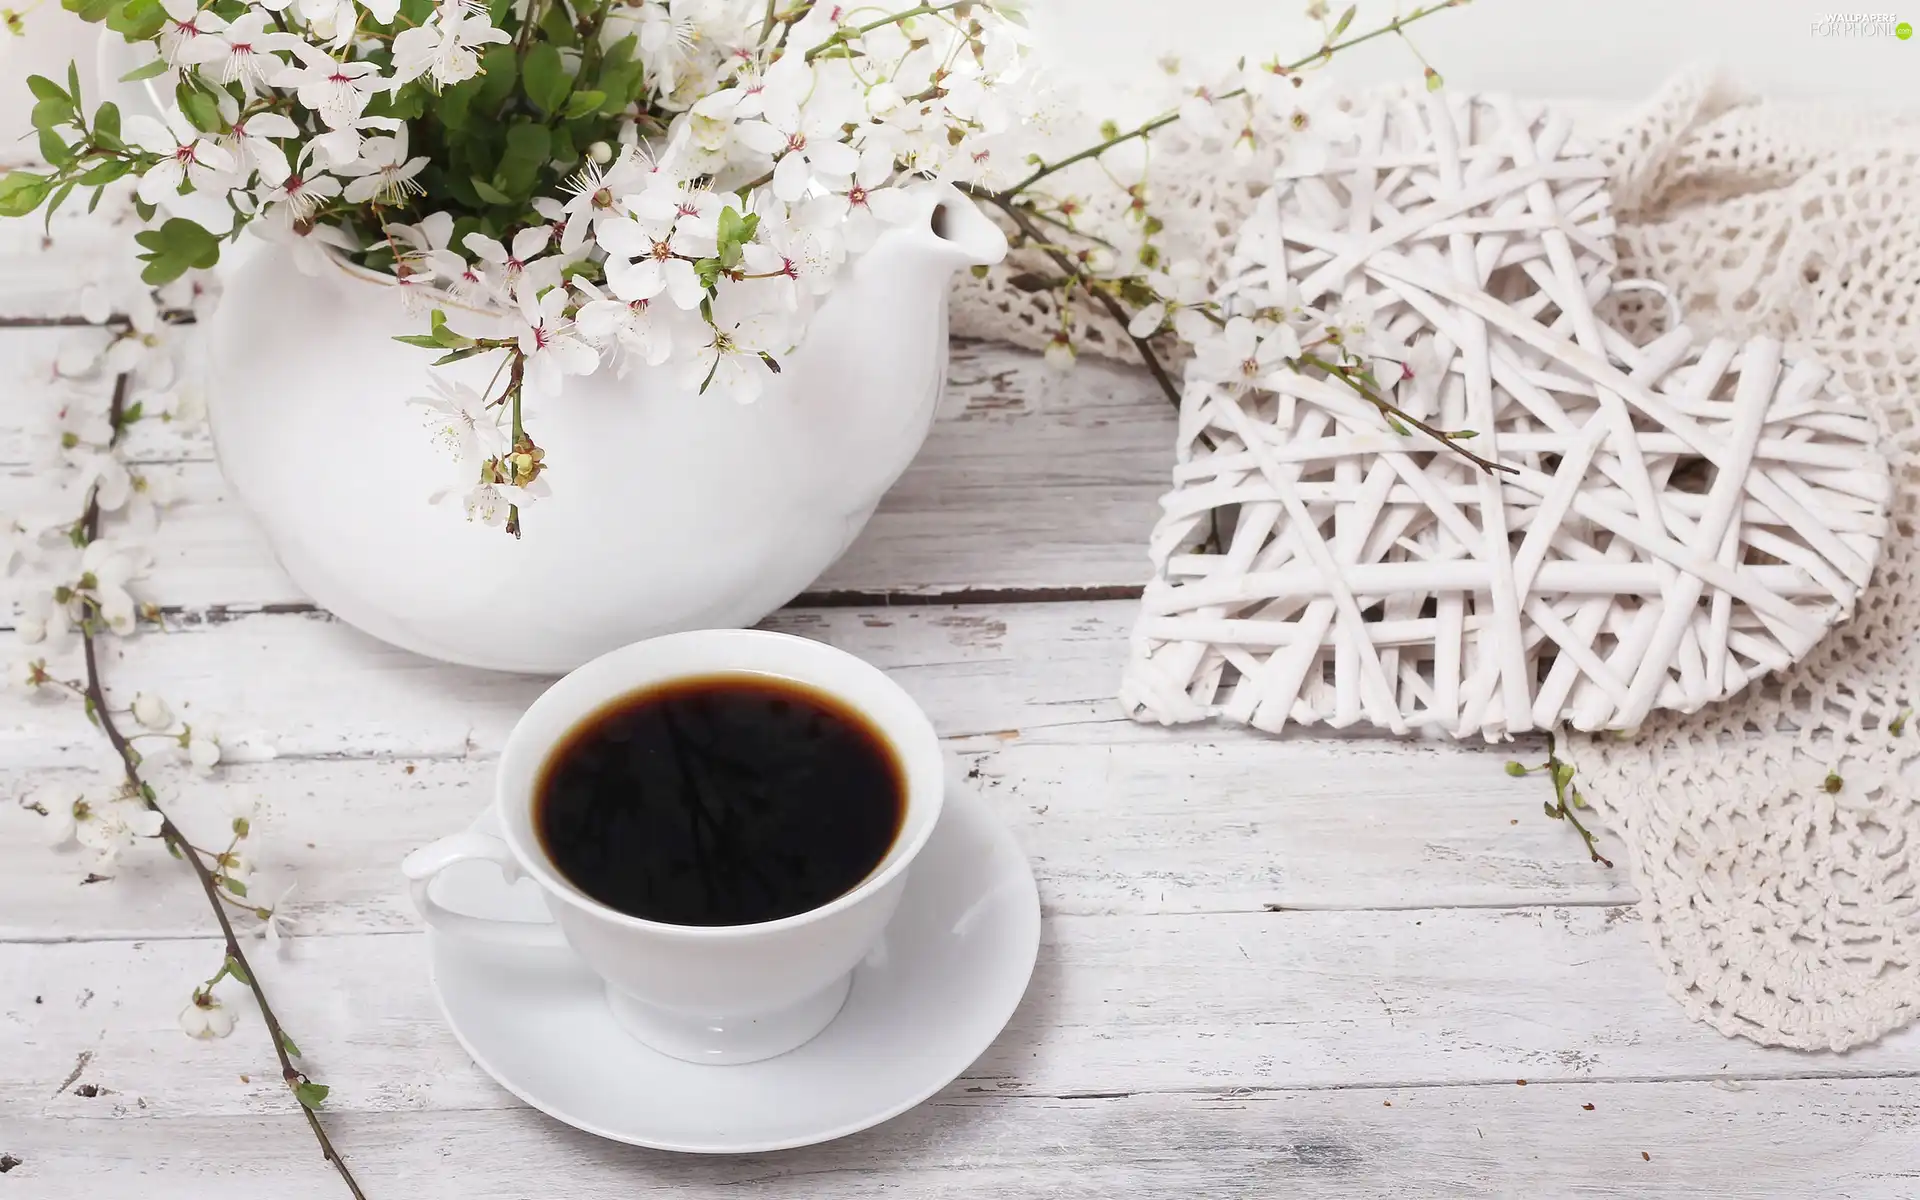 Vase, Flowers, black, coffee, cup